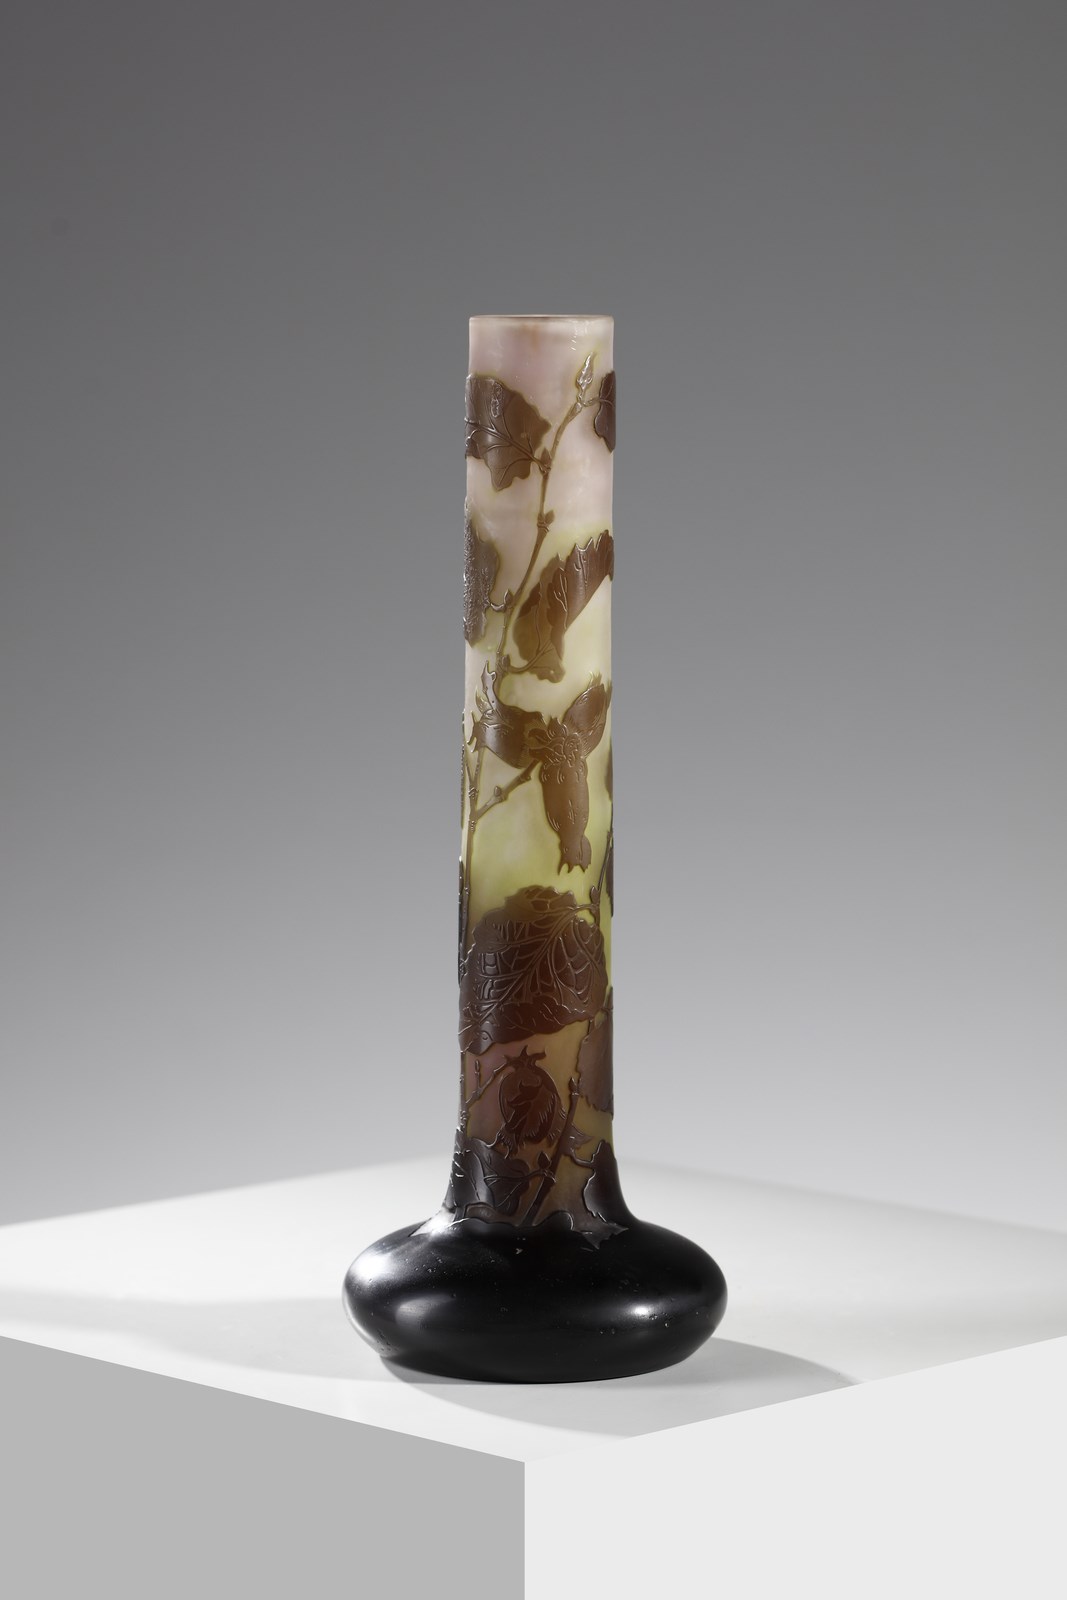 Vaso cilindrico con base a bulbo in vetro doppio, decoro di foglie nei toni del bruno, finemente inciso ad acido su fondo variegato verde e rosato ( Gallé)